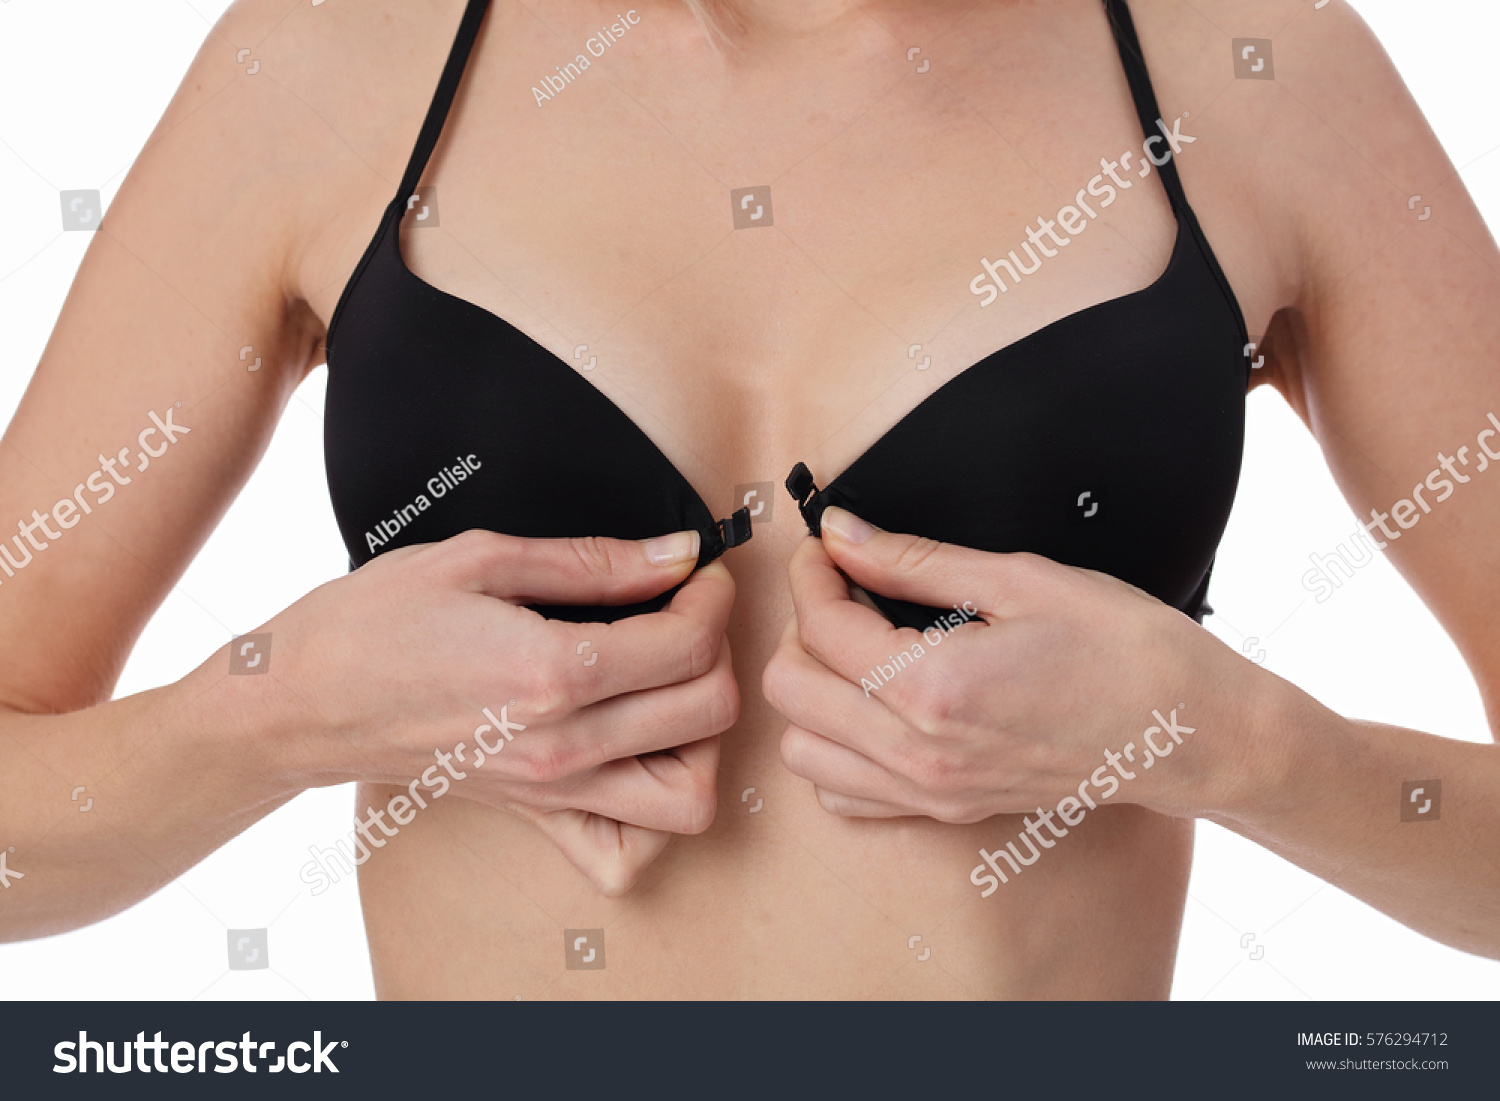 7eer.net Woman Taking Off Bra Wearing Black Foto de stock 576294712 S.